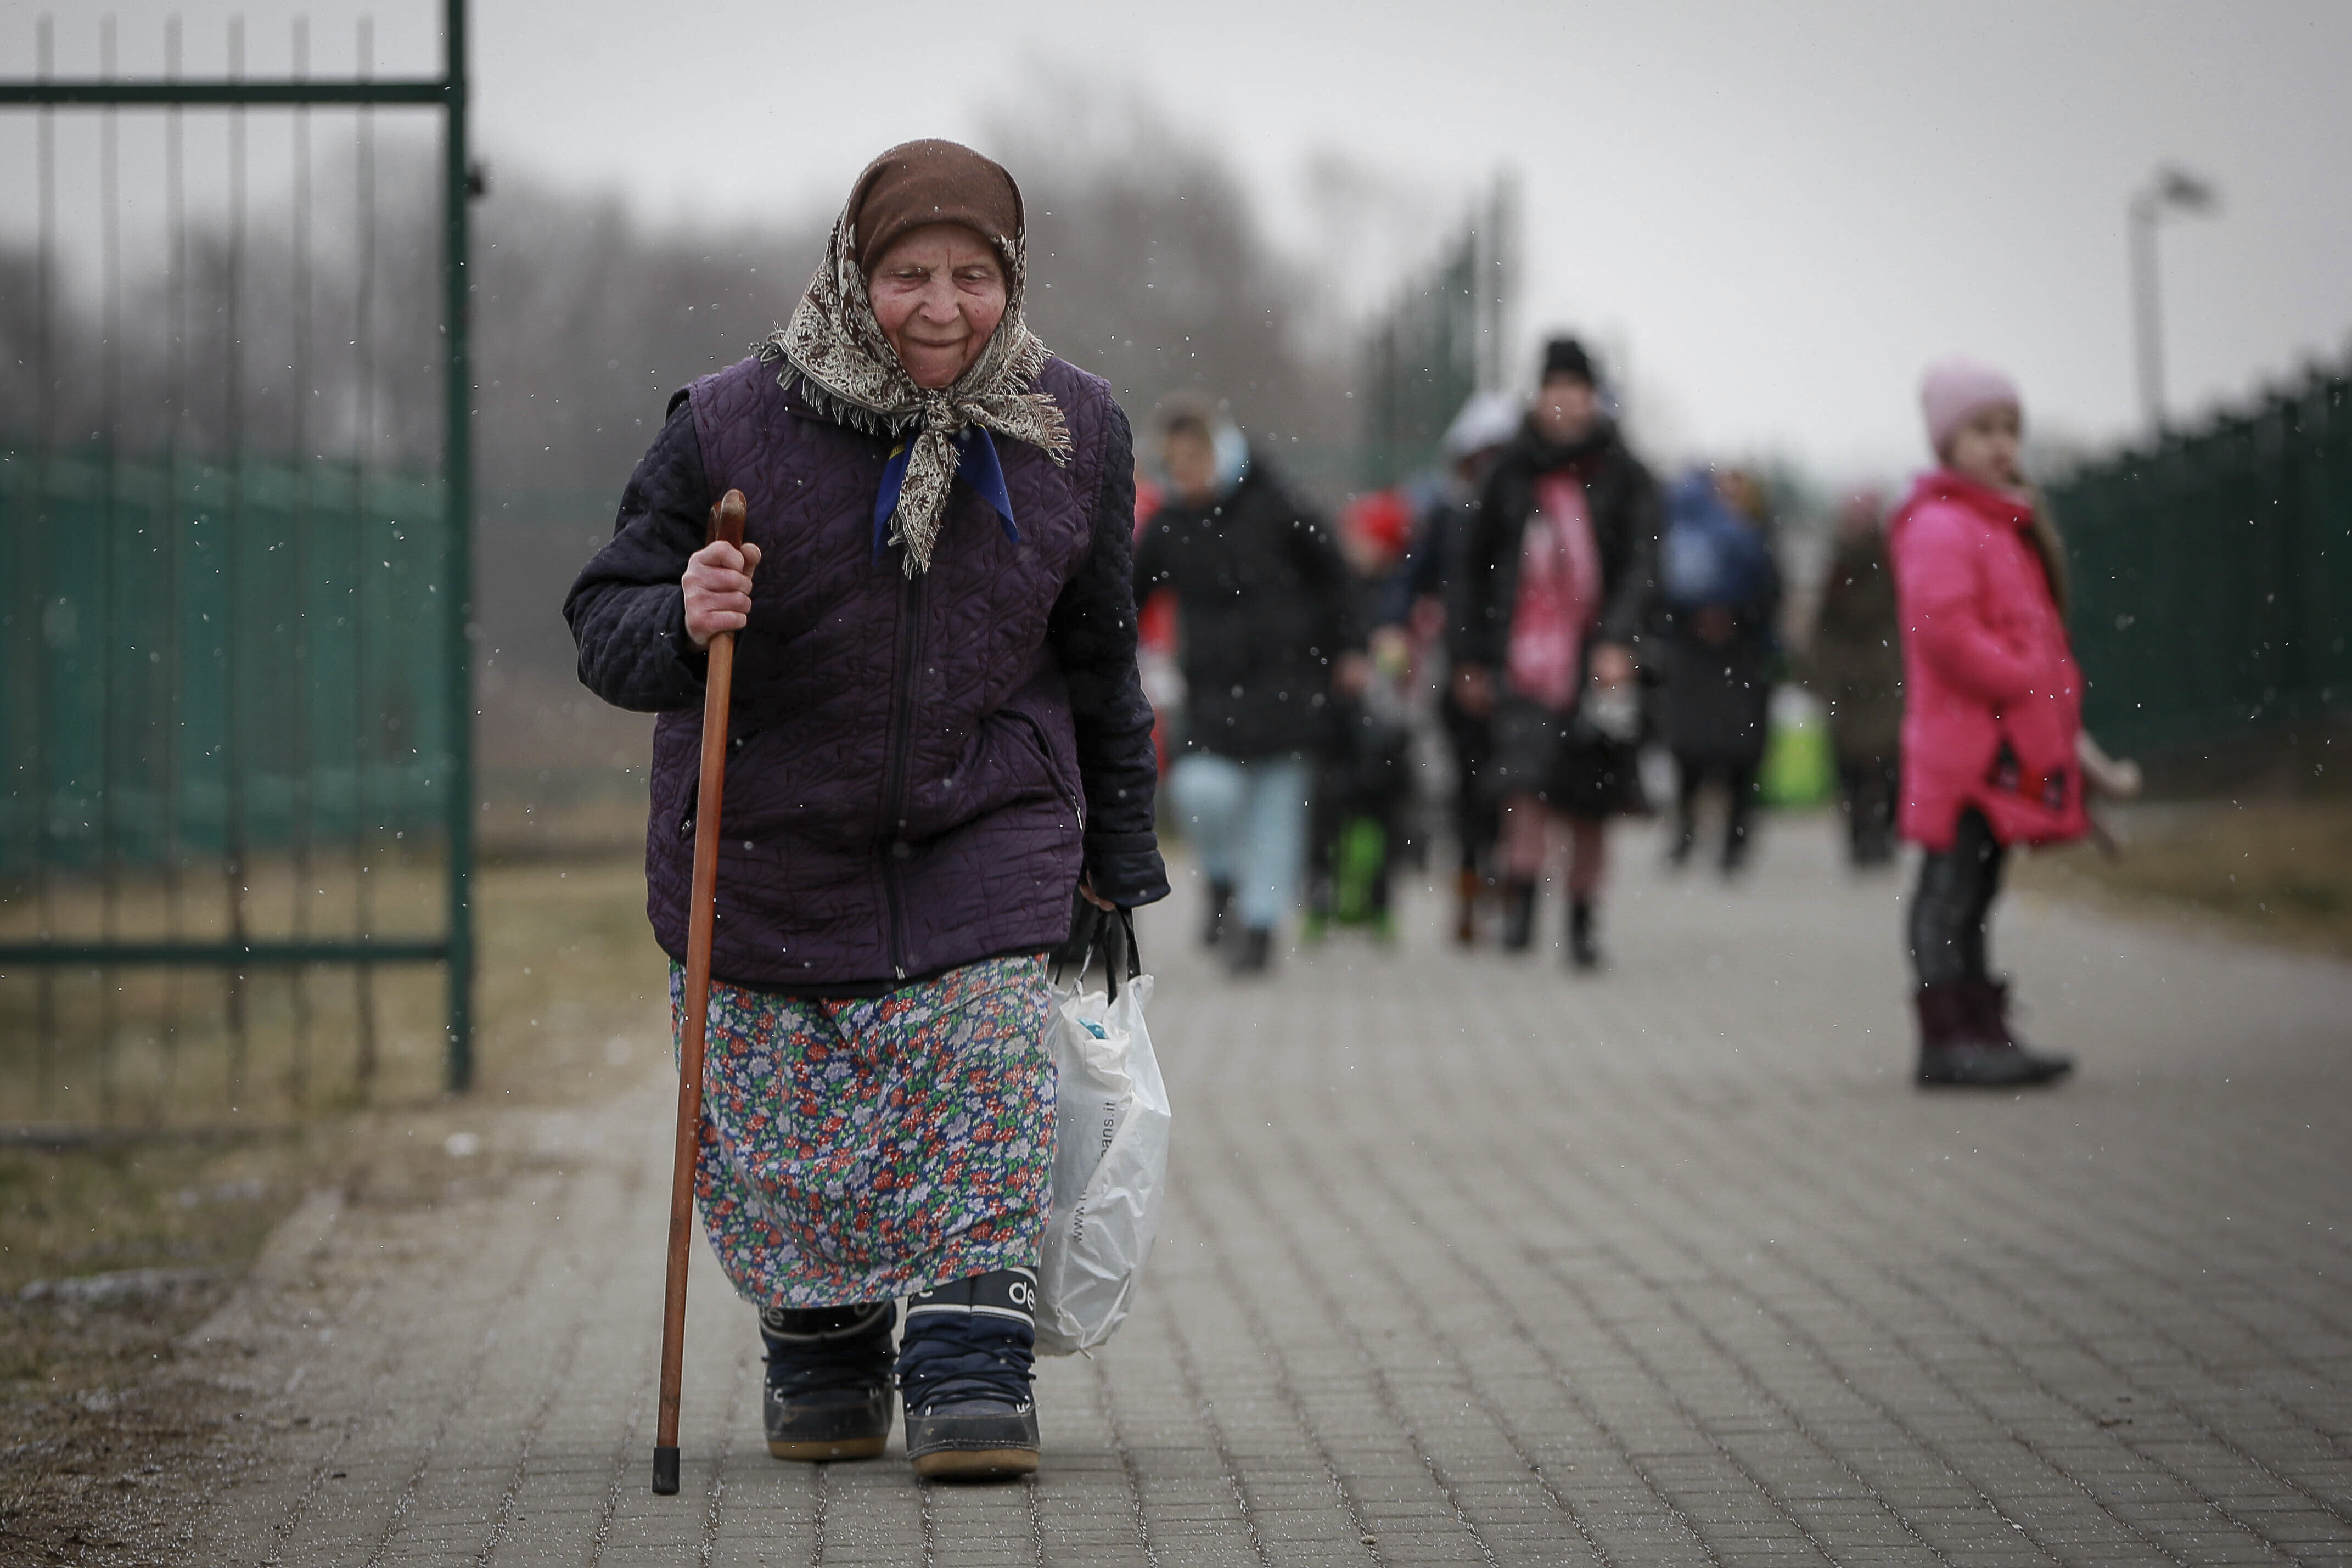 Εκατοντάδες άνθρωποι έχουν απομακρυνθεί από τις εστίες τους στην επαρχία του Χαρκόβου έπειτα από τη ρωσική επίθεση